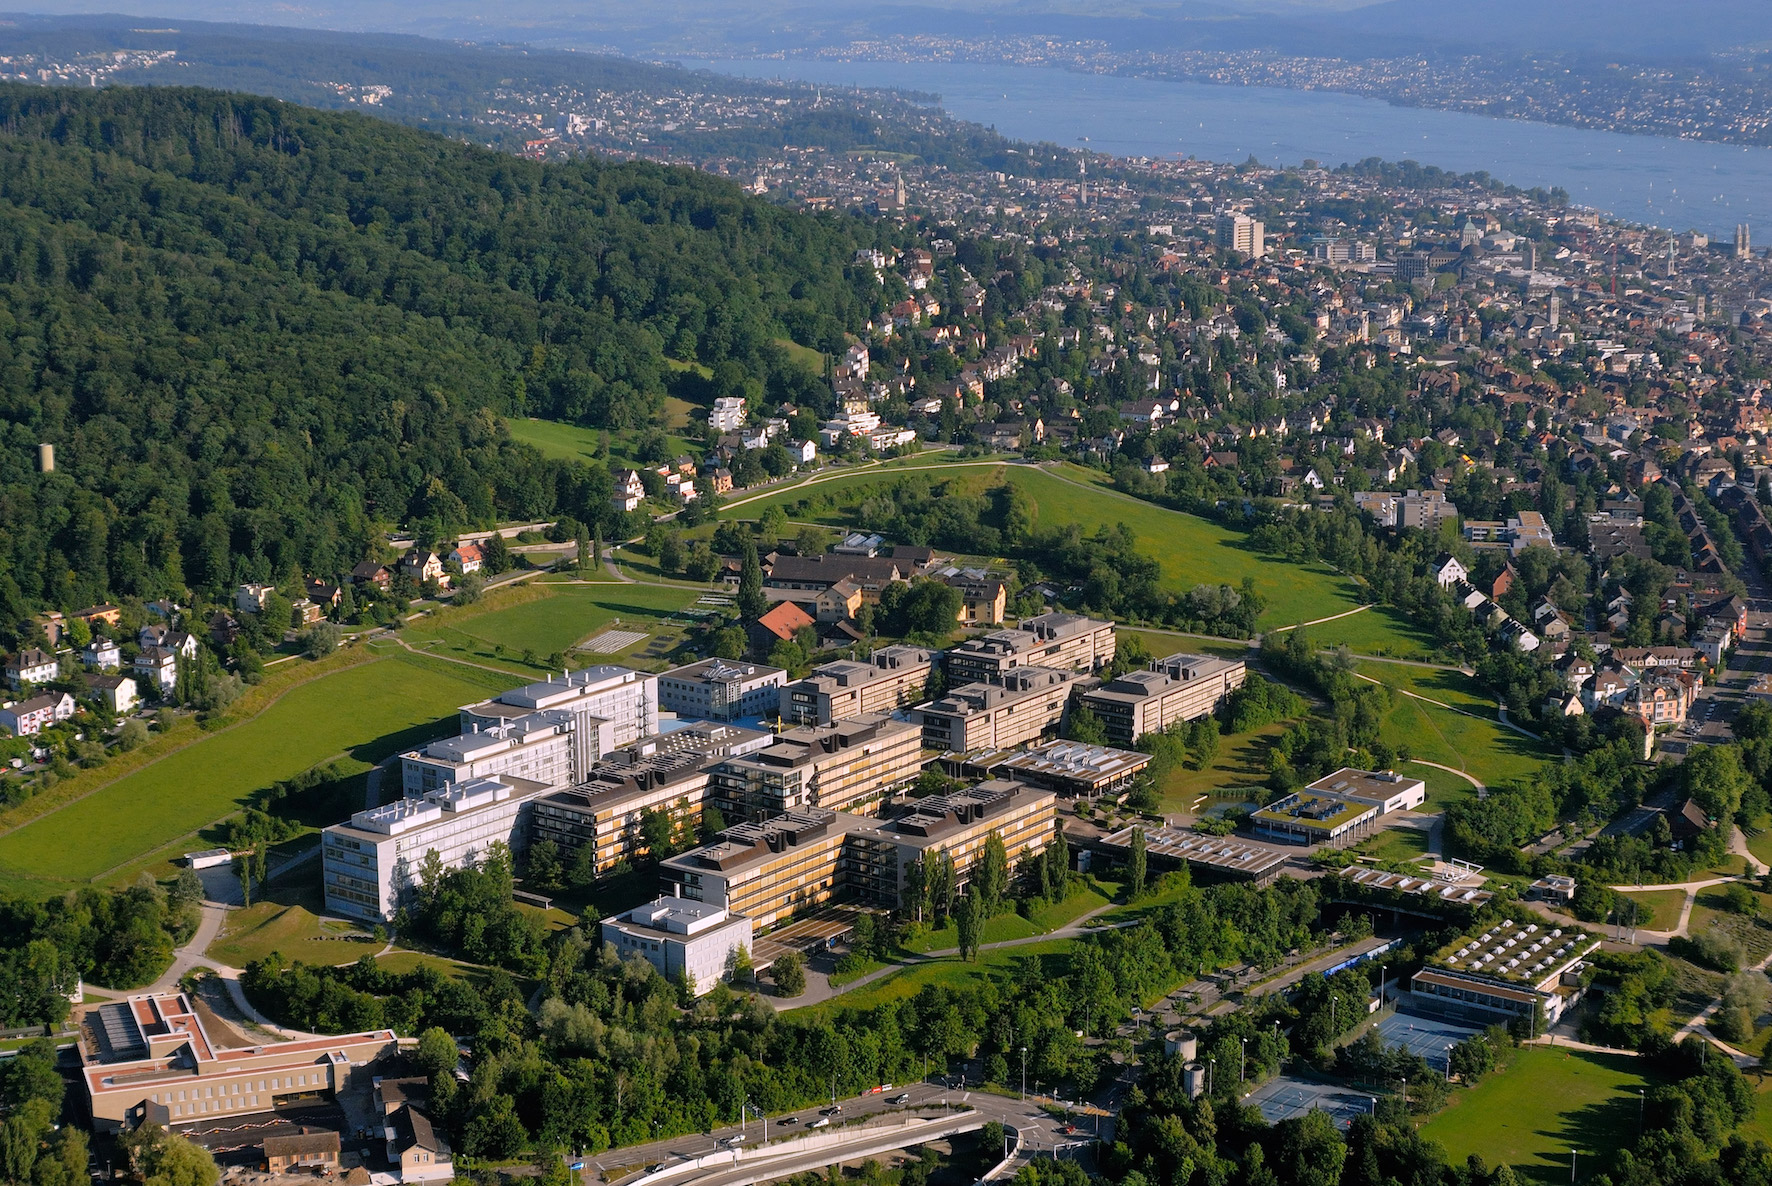 © Universität Zürich, Manfred Richter